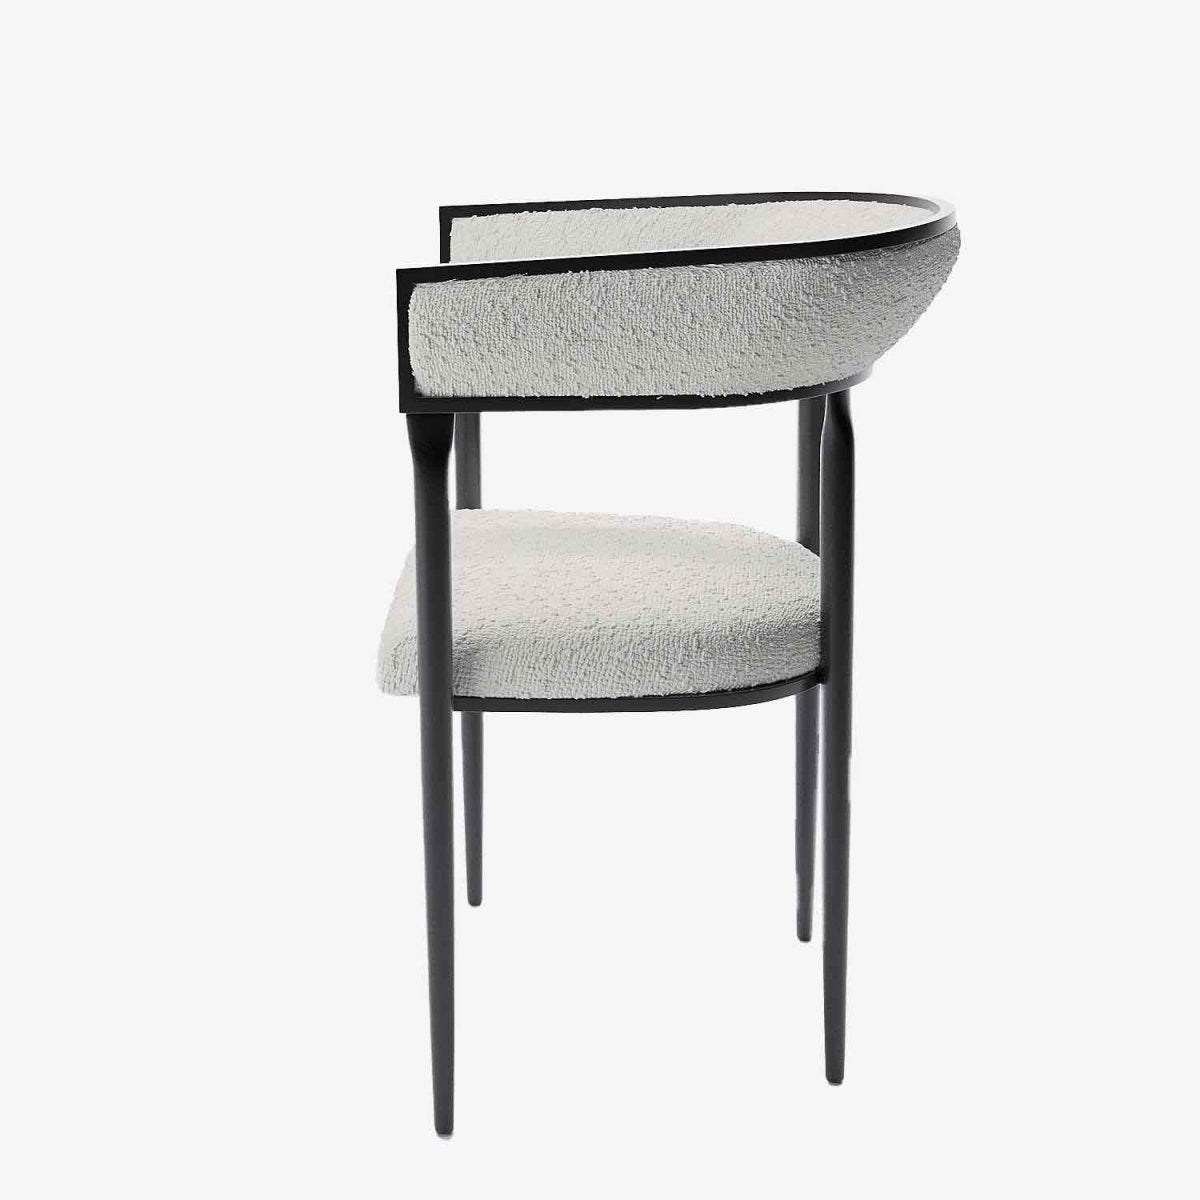 Chaise de salle à manger avec accourdoirs en bouclette blanche - Potiron Paris, la satisfaction des chaises de table design confortables au meilleur prix